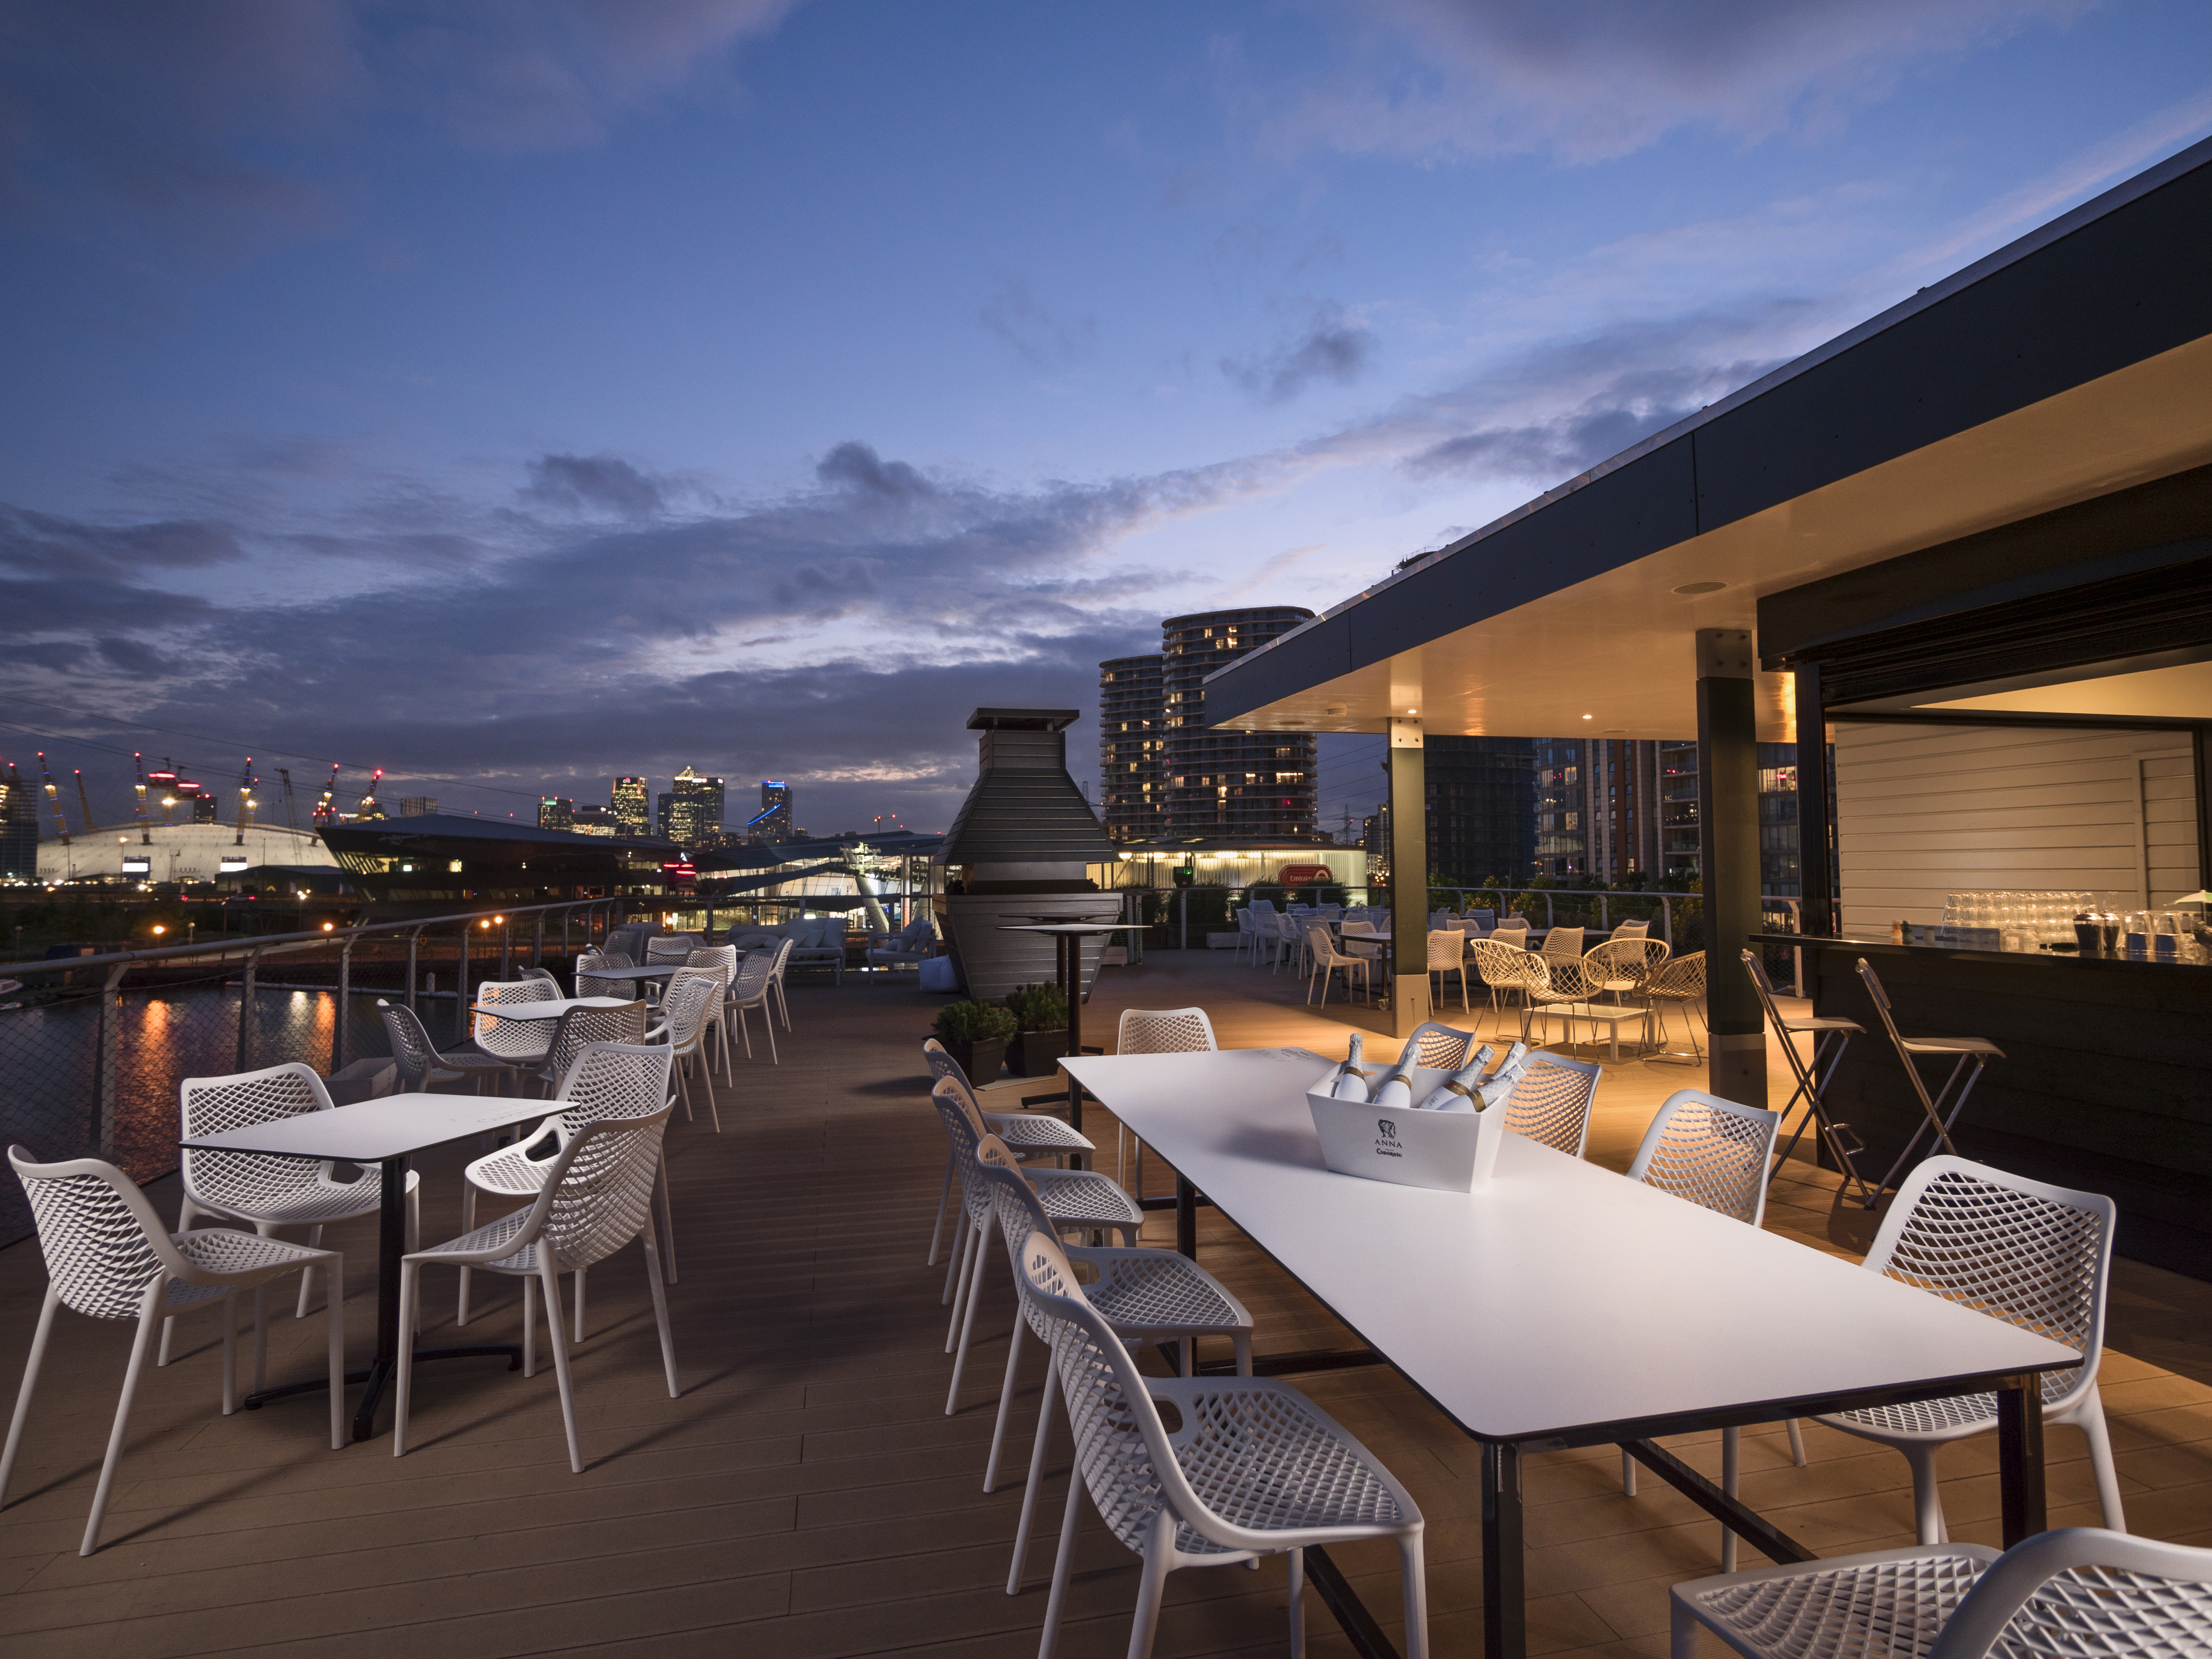 Rooftop Terrace - Good Hotel London - Event Venue Hire - Tagvenue.com